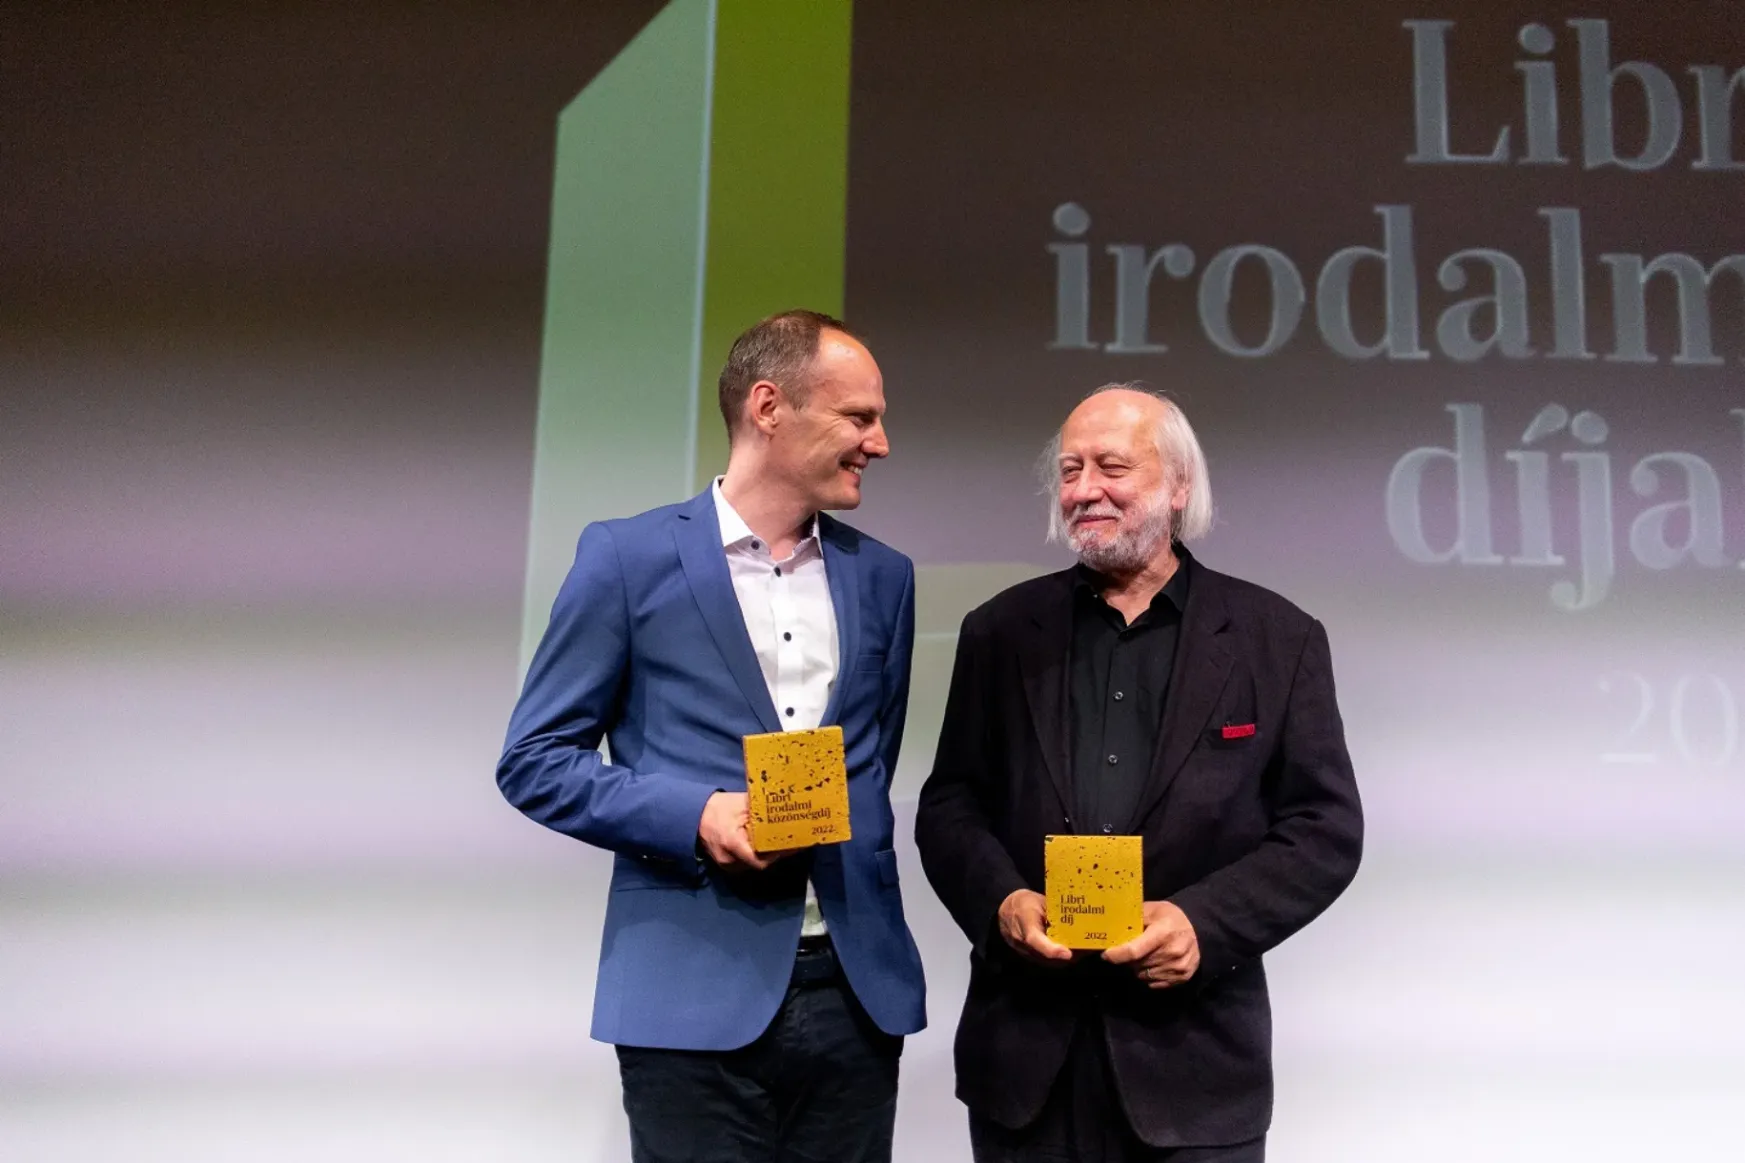 Krasznahorkai László nyerte az idei Libri-díjat, Bödőcs Tibor szatírája közönségdíjas lett